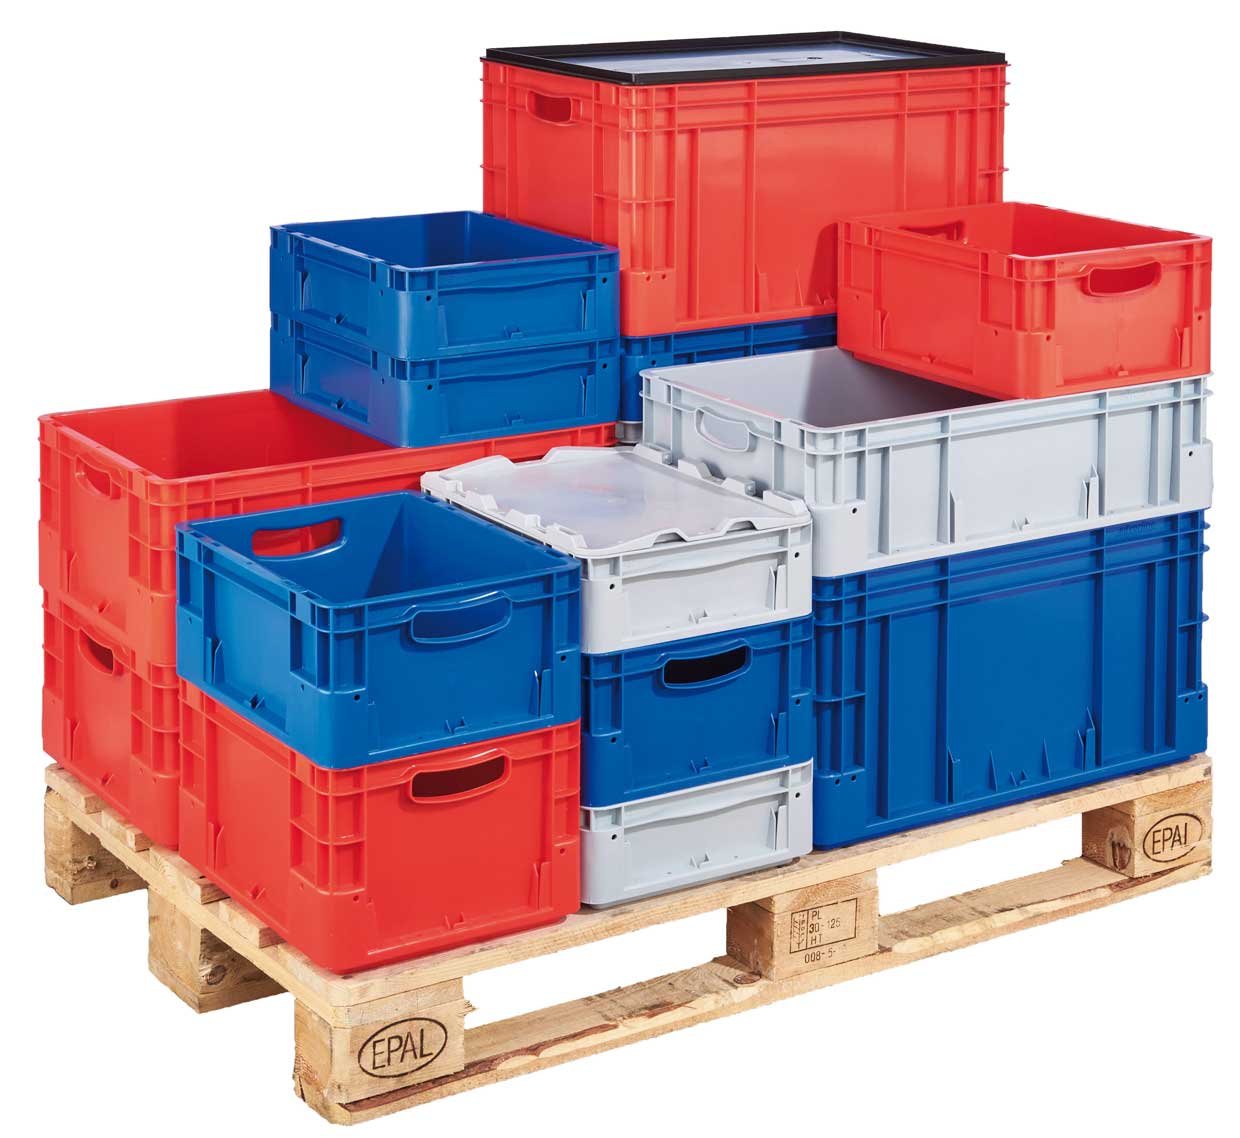 Robusztus műanyag dobozok különböző méretekben és színekben, amelyek jól illeszkednek az EUR-raklapra.